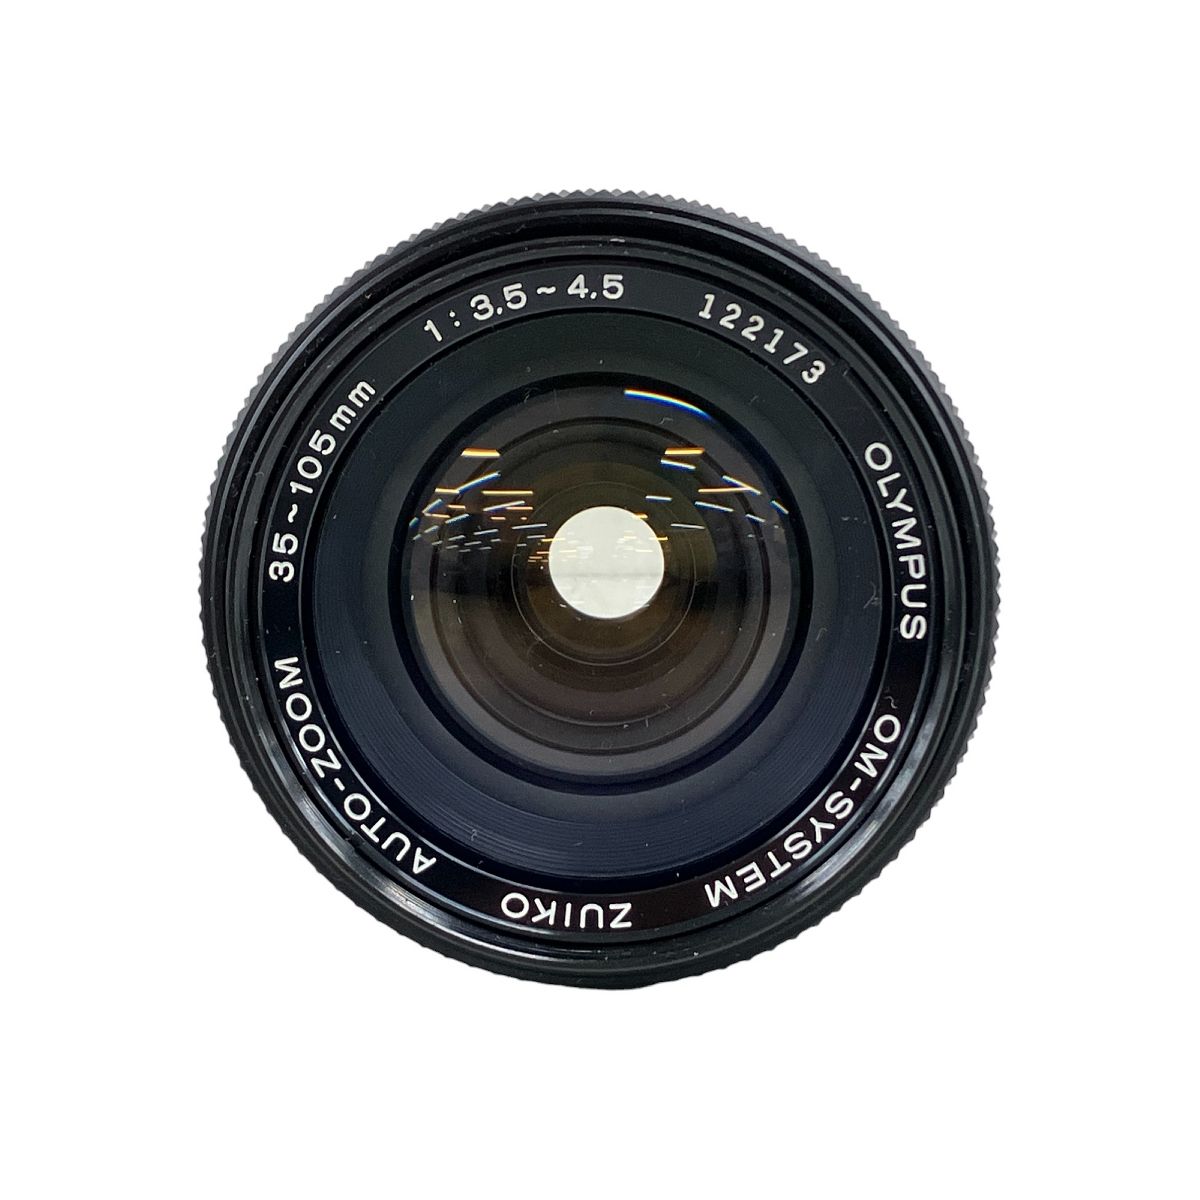 【動作保証】OLYMPUS オリンパス OM-SYSTEM ZUIKO AUTO-ZOOM 35-105mm F3.5-4.5 カメラ レンズ 中古  K8967176